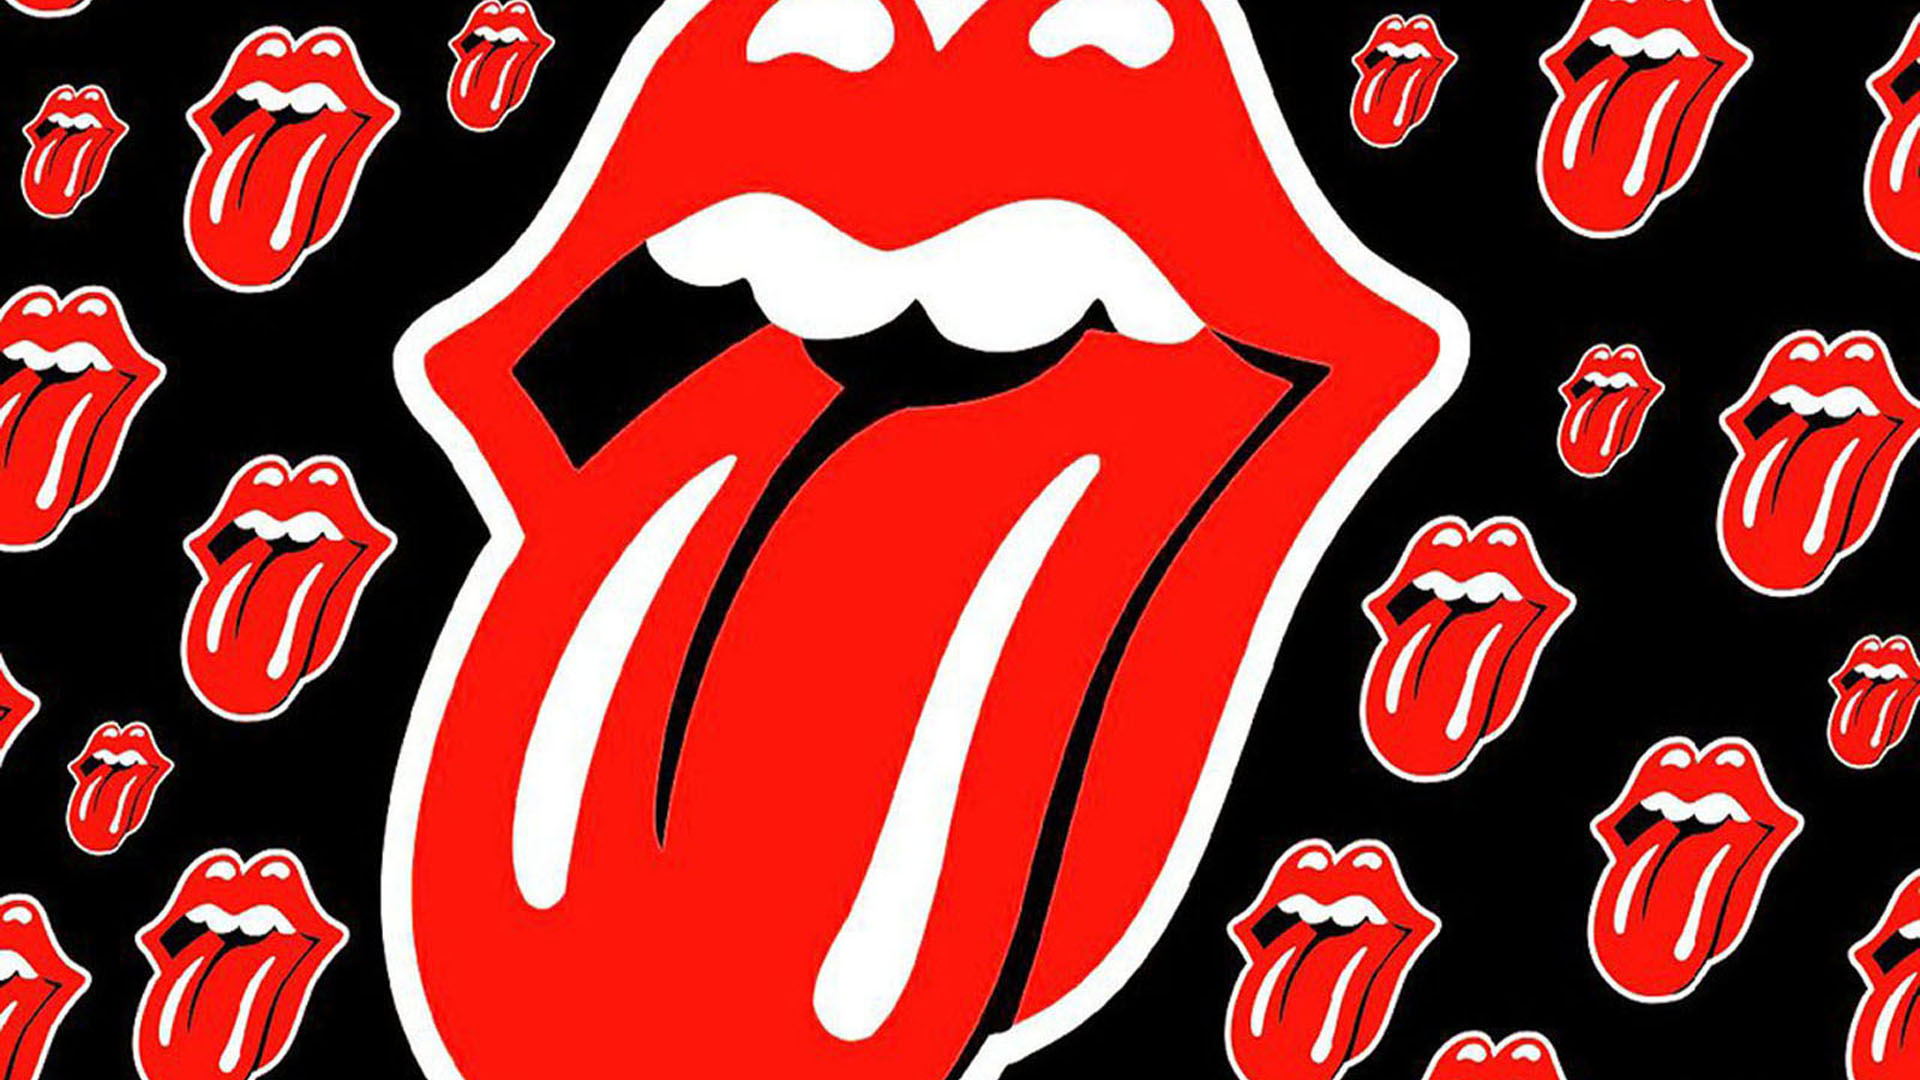 The Rolling Stones Desktop 1920x1080 Wallpapers 1920x1080 Wallpapers